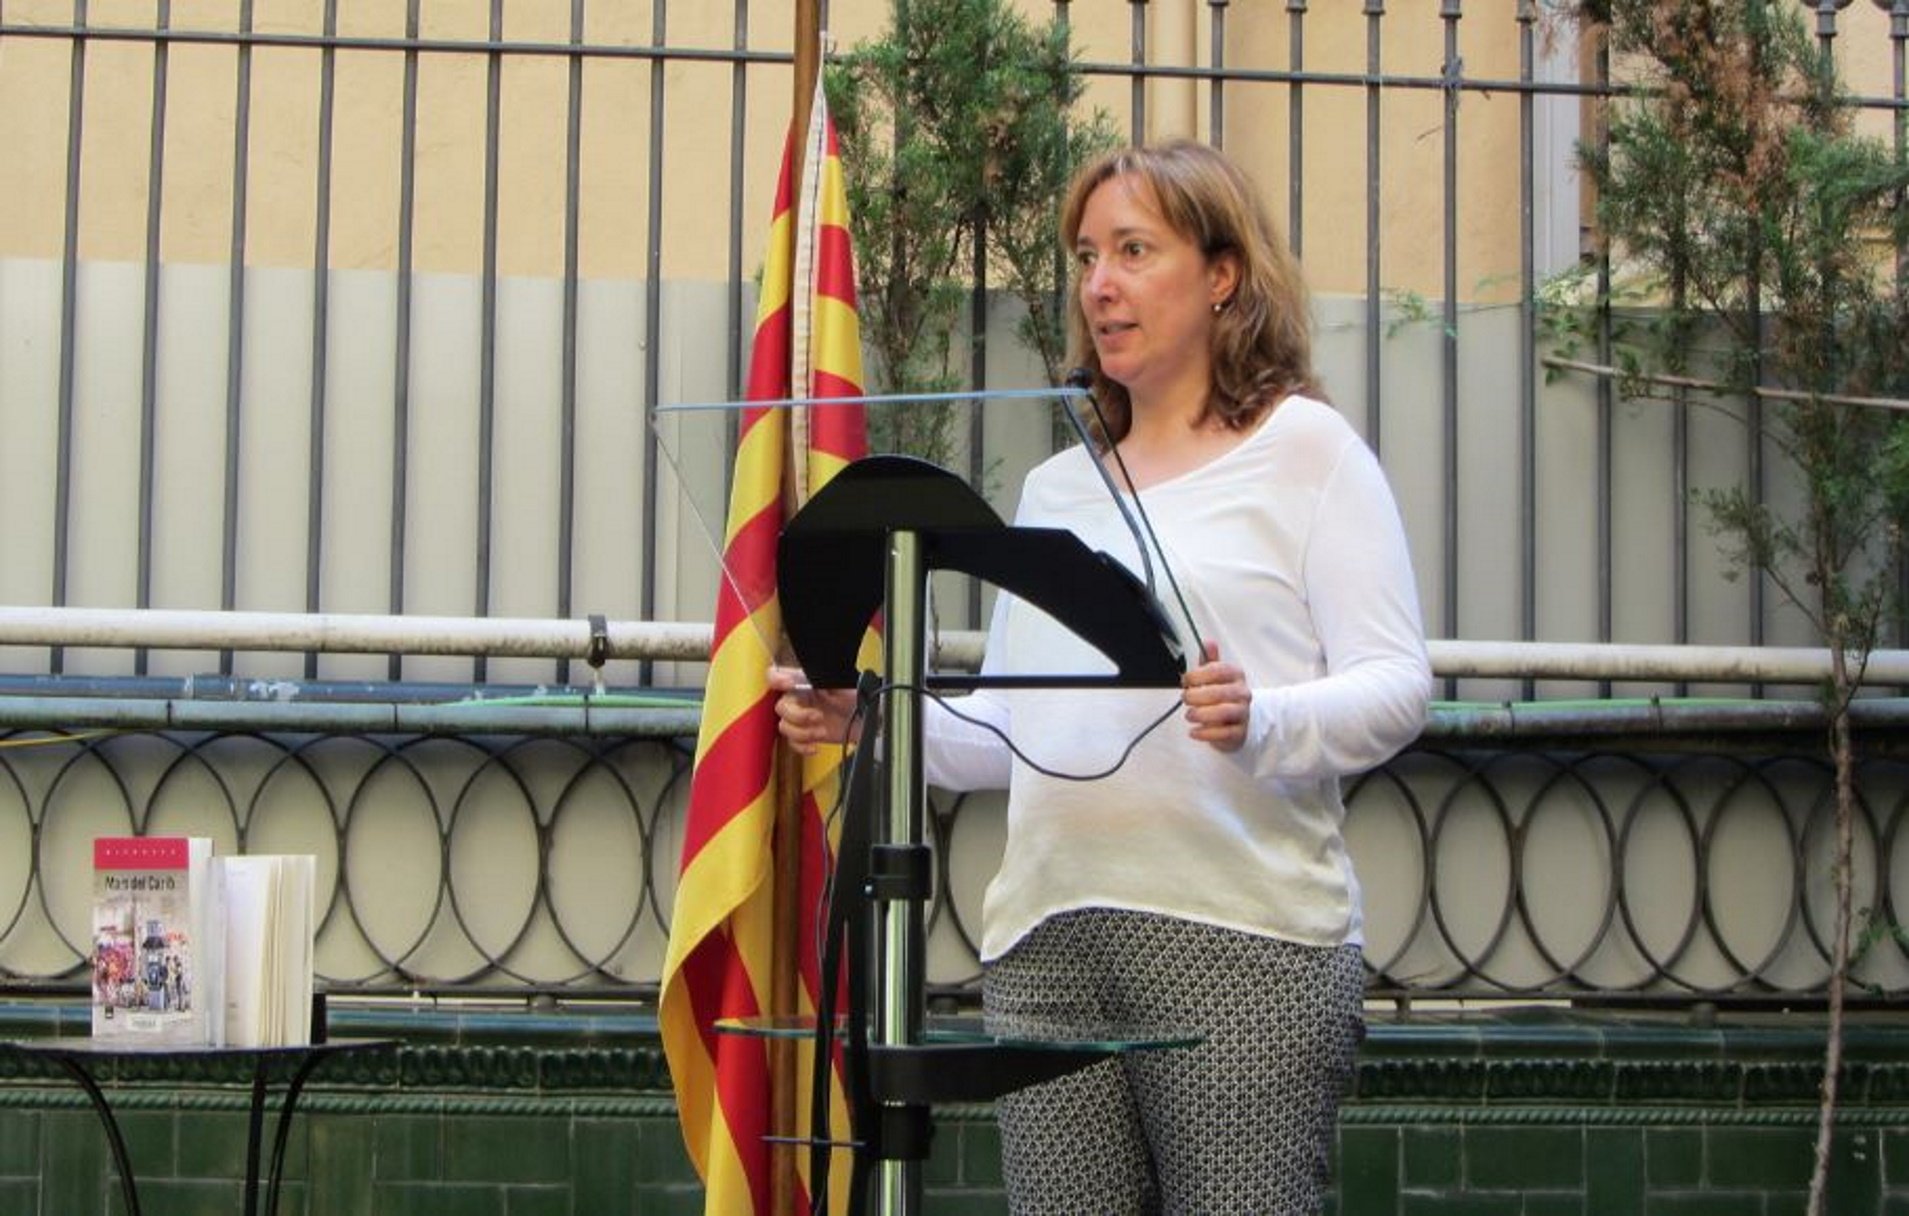 Polèmica a l'Ateneu Barcelonès per l'acomiadament fulminant de Diana Cot, coordinadora cultural